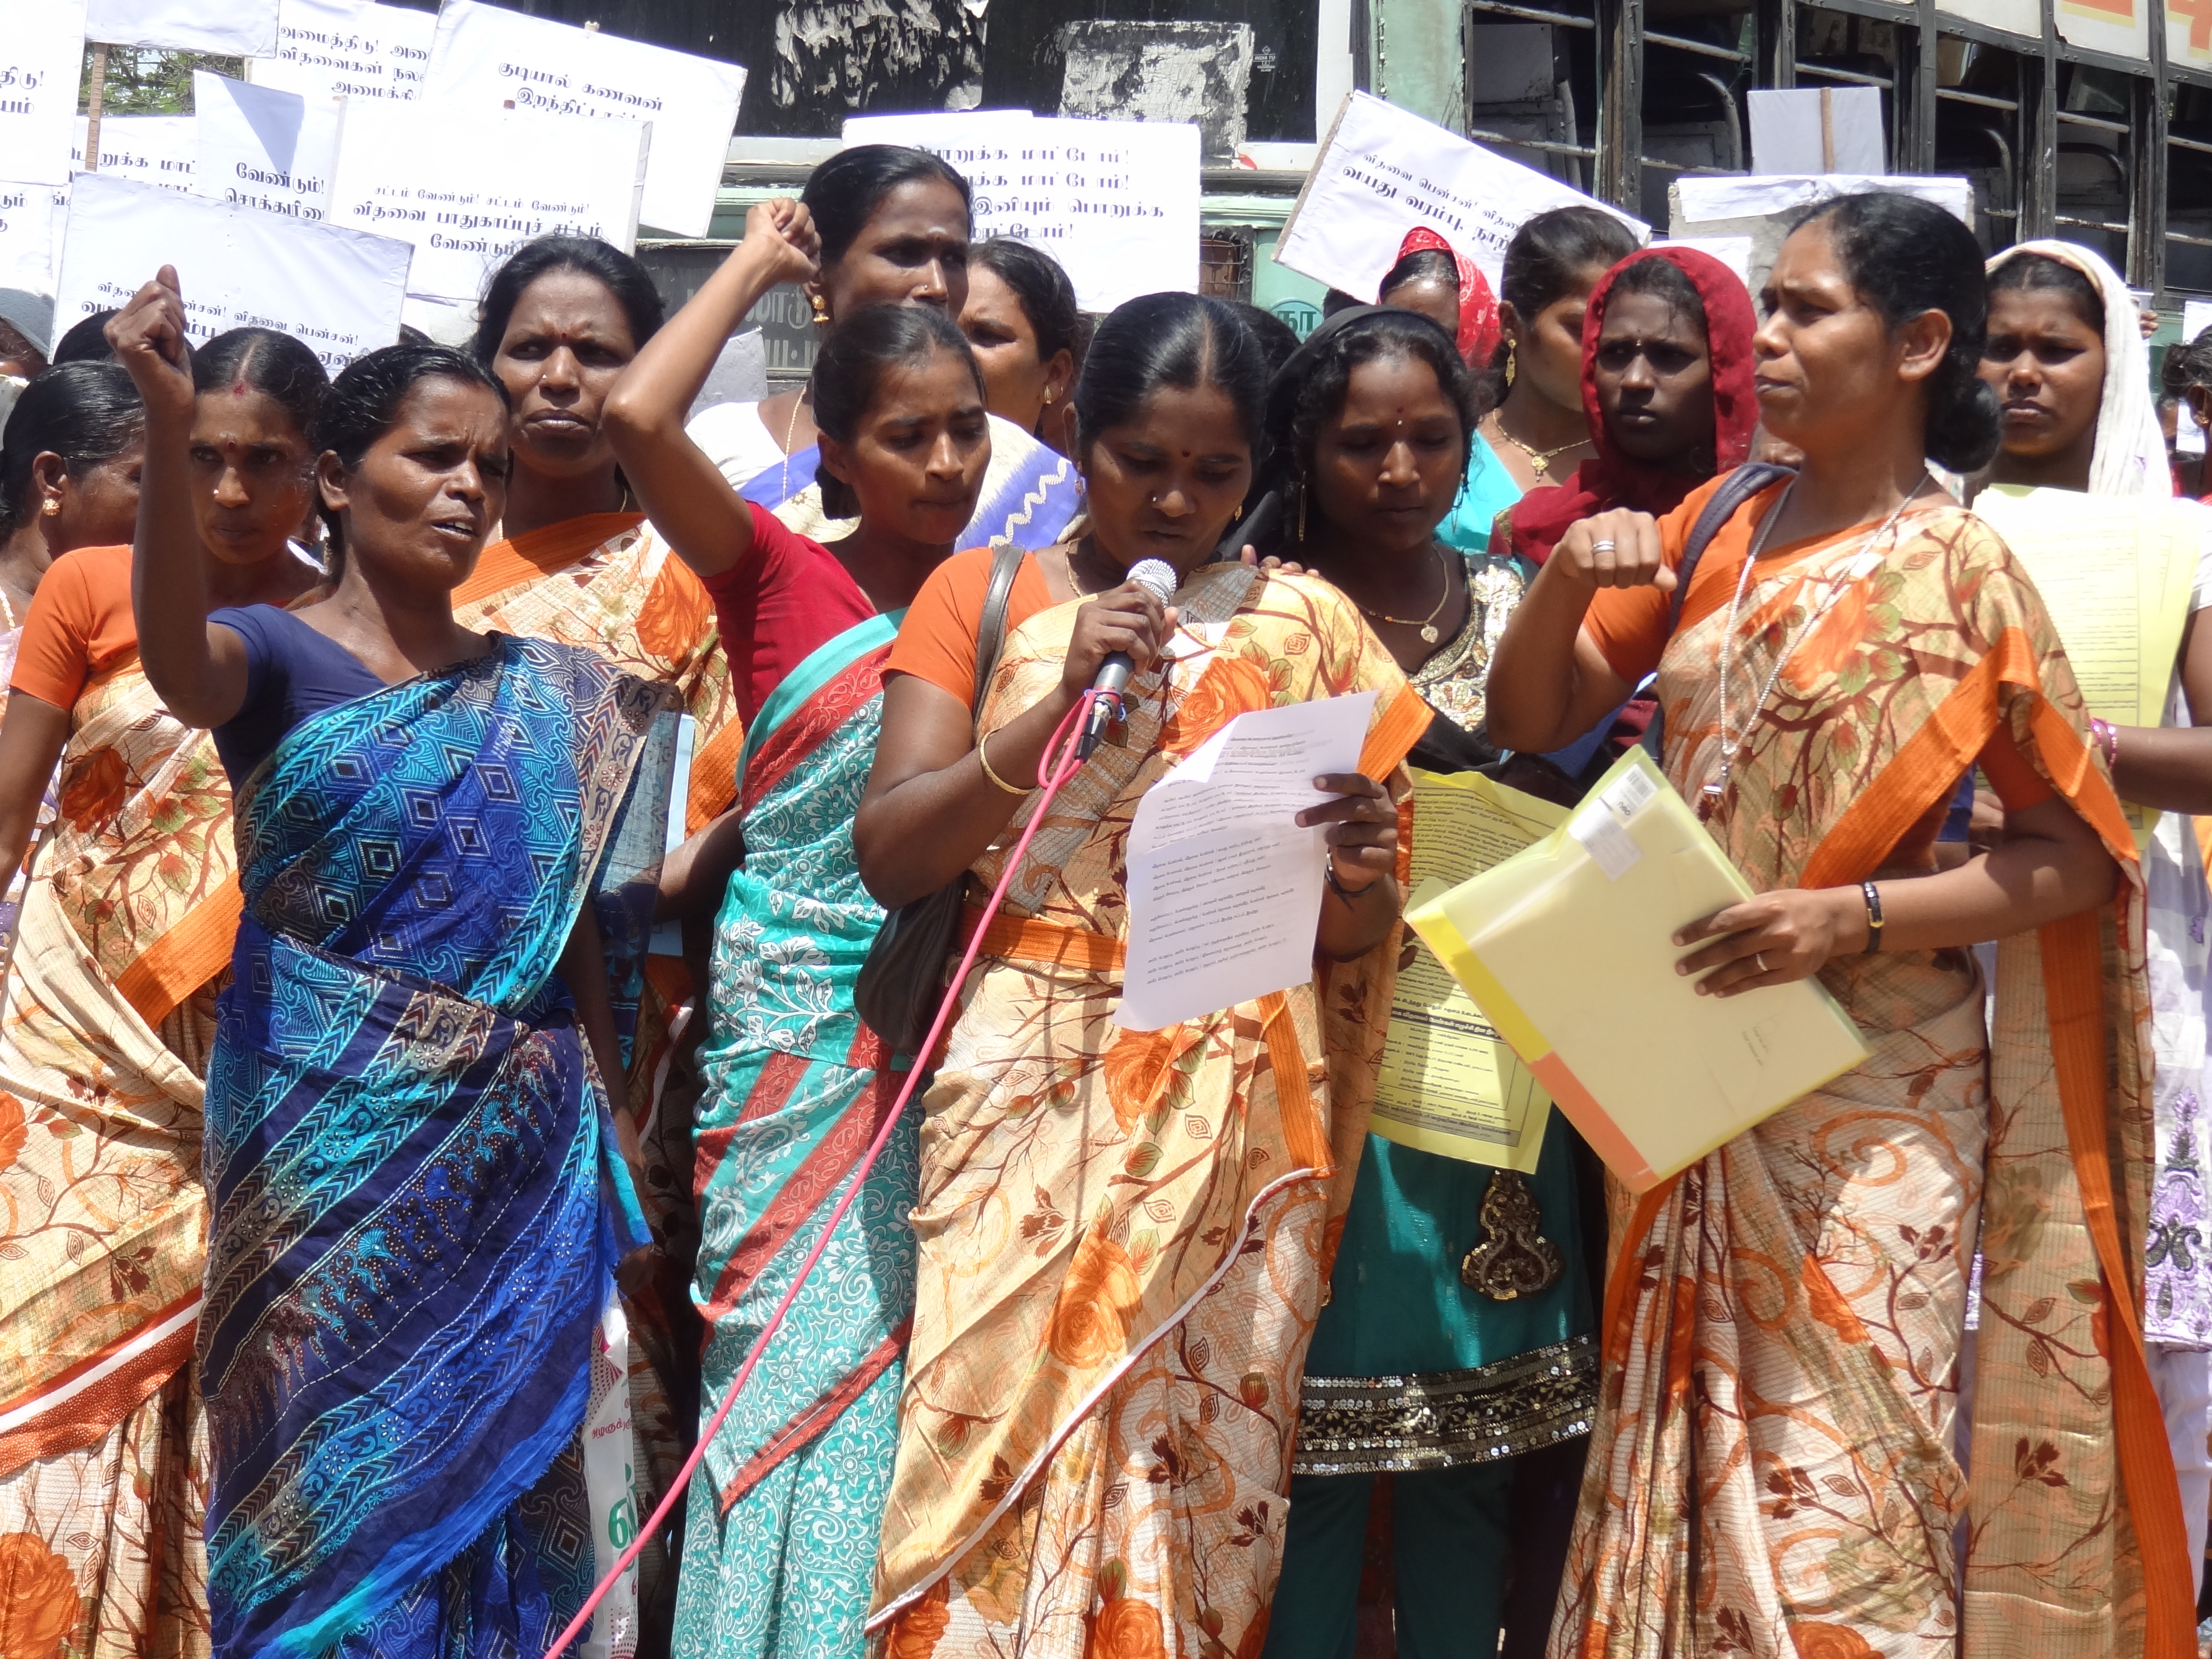 Los clientes de Laboral Kutxa apoyan a las mujeres dalit en India